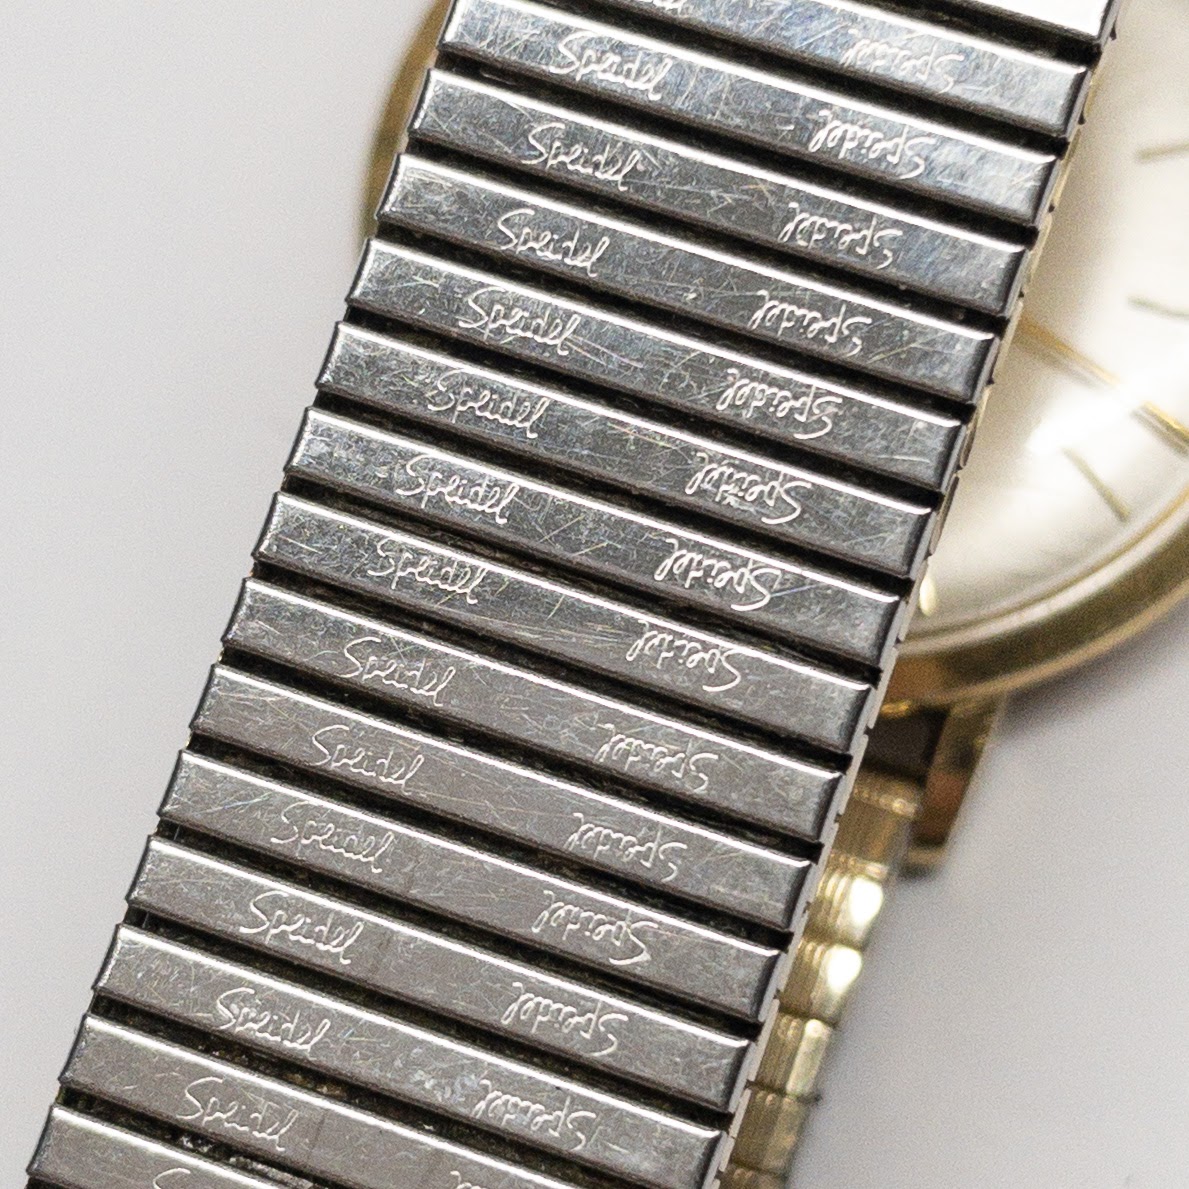 18K Gold Jules Jurgensen Vintage Watch